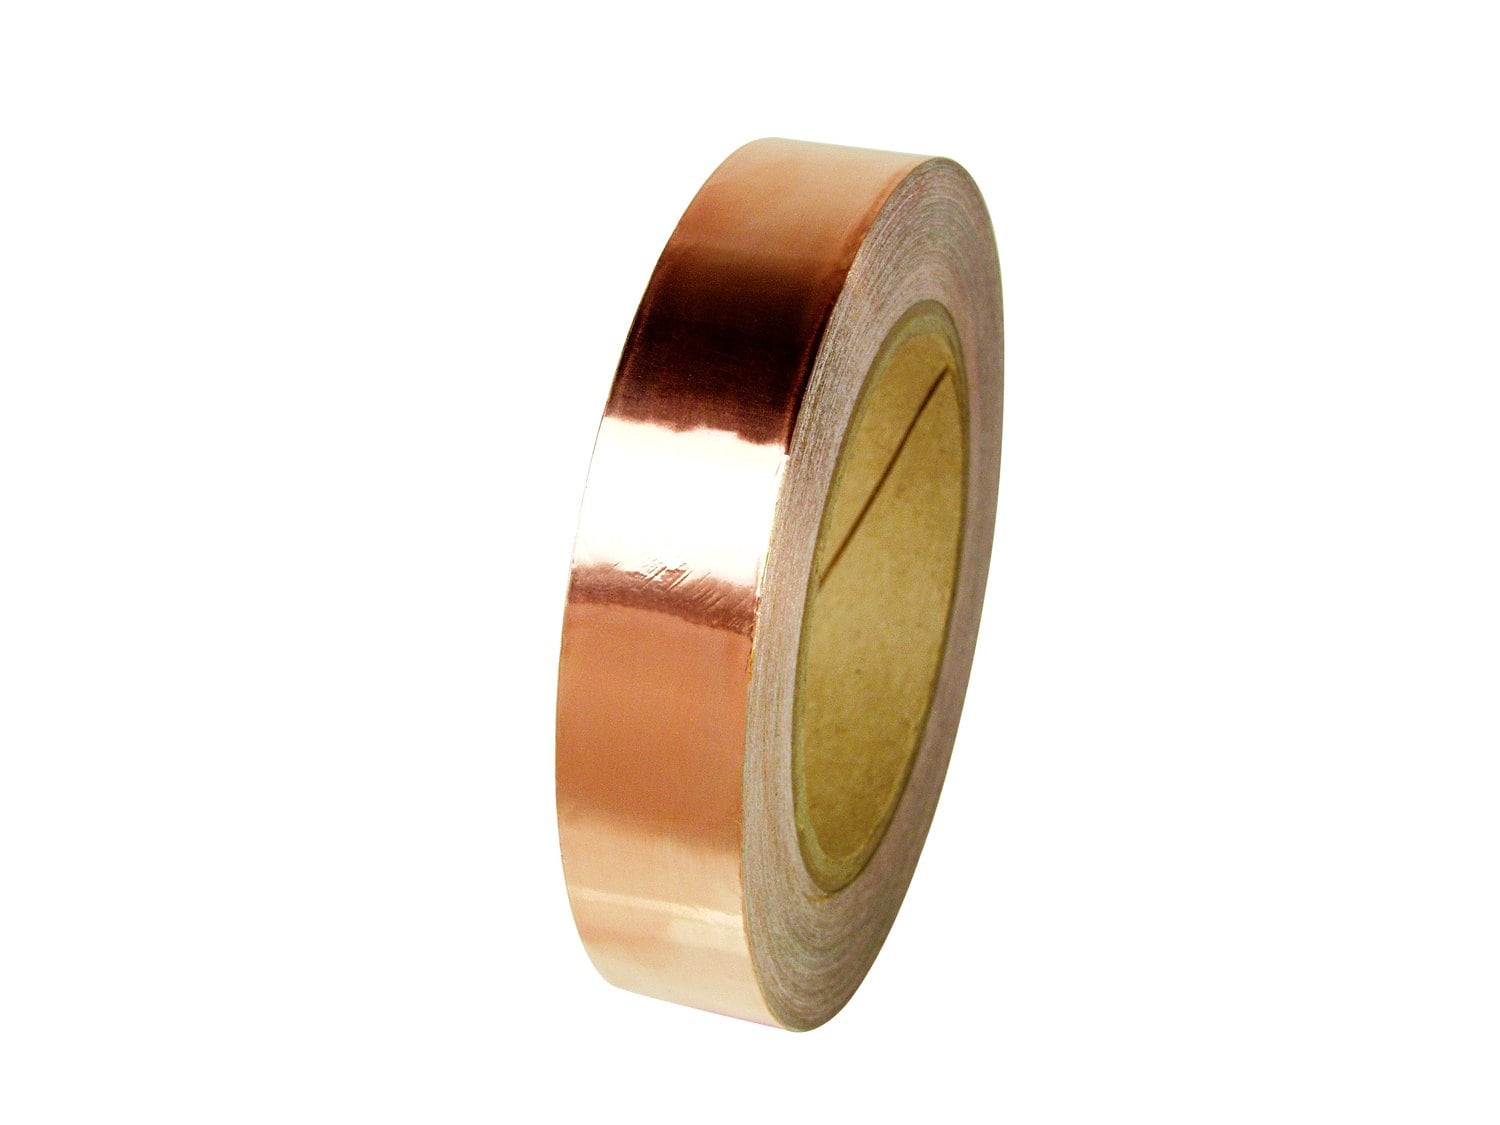 7000133153 - 3M Copper Foil EMI Shielding Tape 1126, 6 in x 36 yd, Roll, 2
Rolls/Case